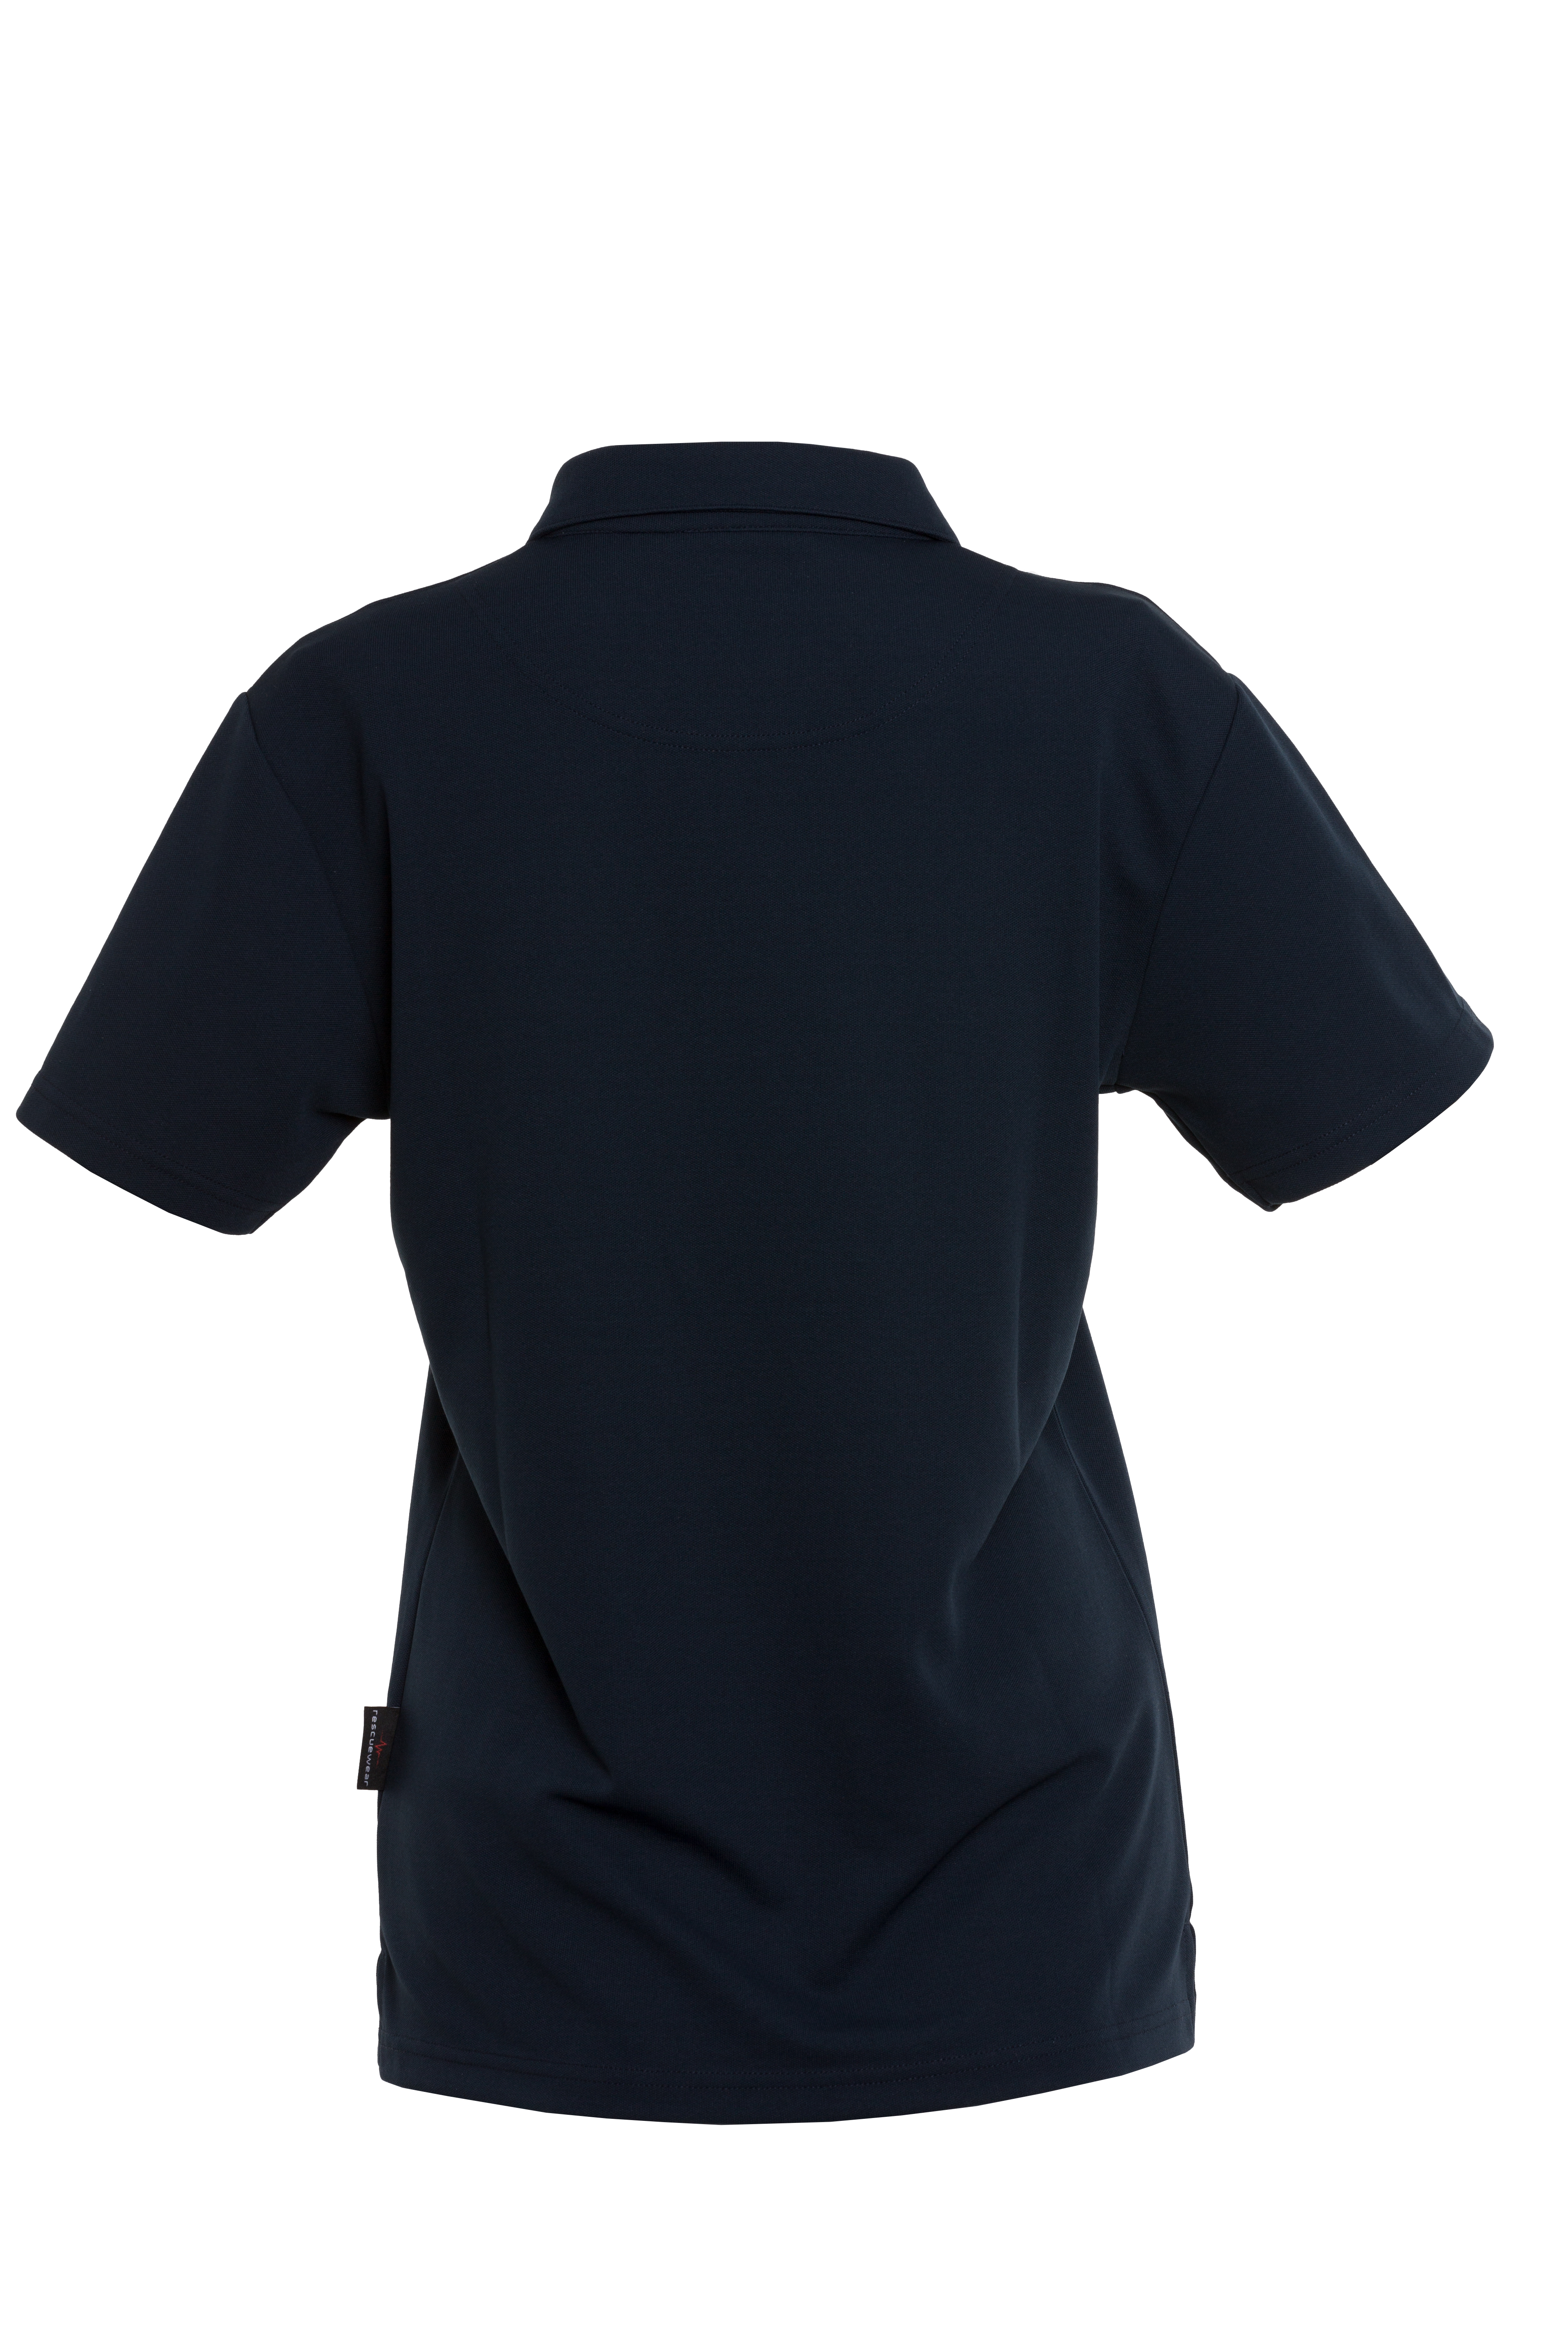 Rescuewear Damen Poloshirt 33200W kurze Ärmel Basic Marineblau `W-Linie` - 38